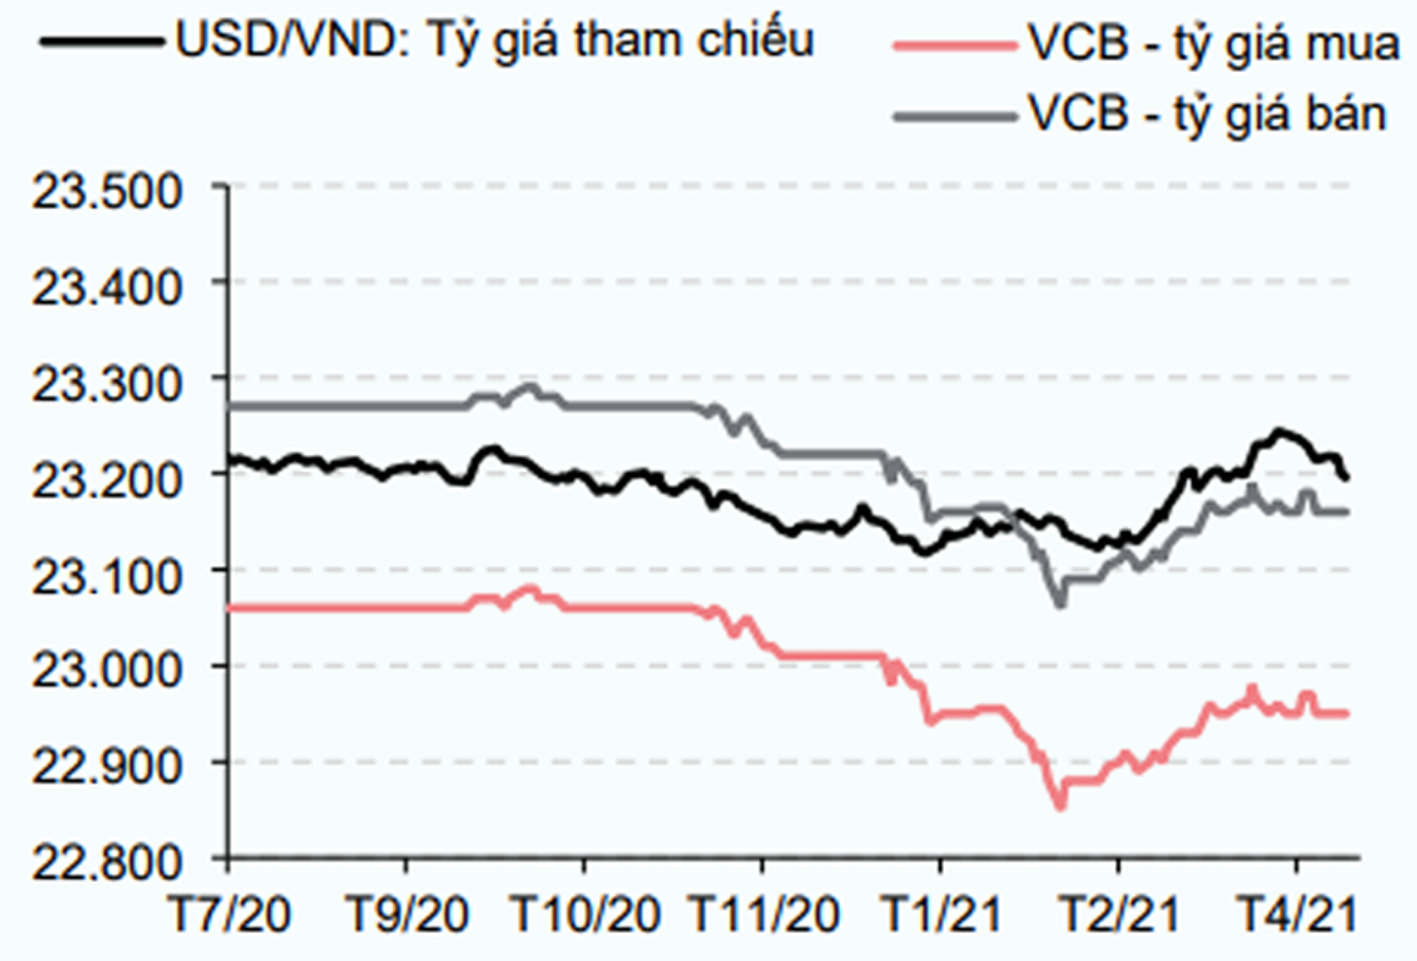 Tỷ giá USD/VND đã có xu hướng giảm trong thời gian qua